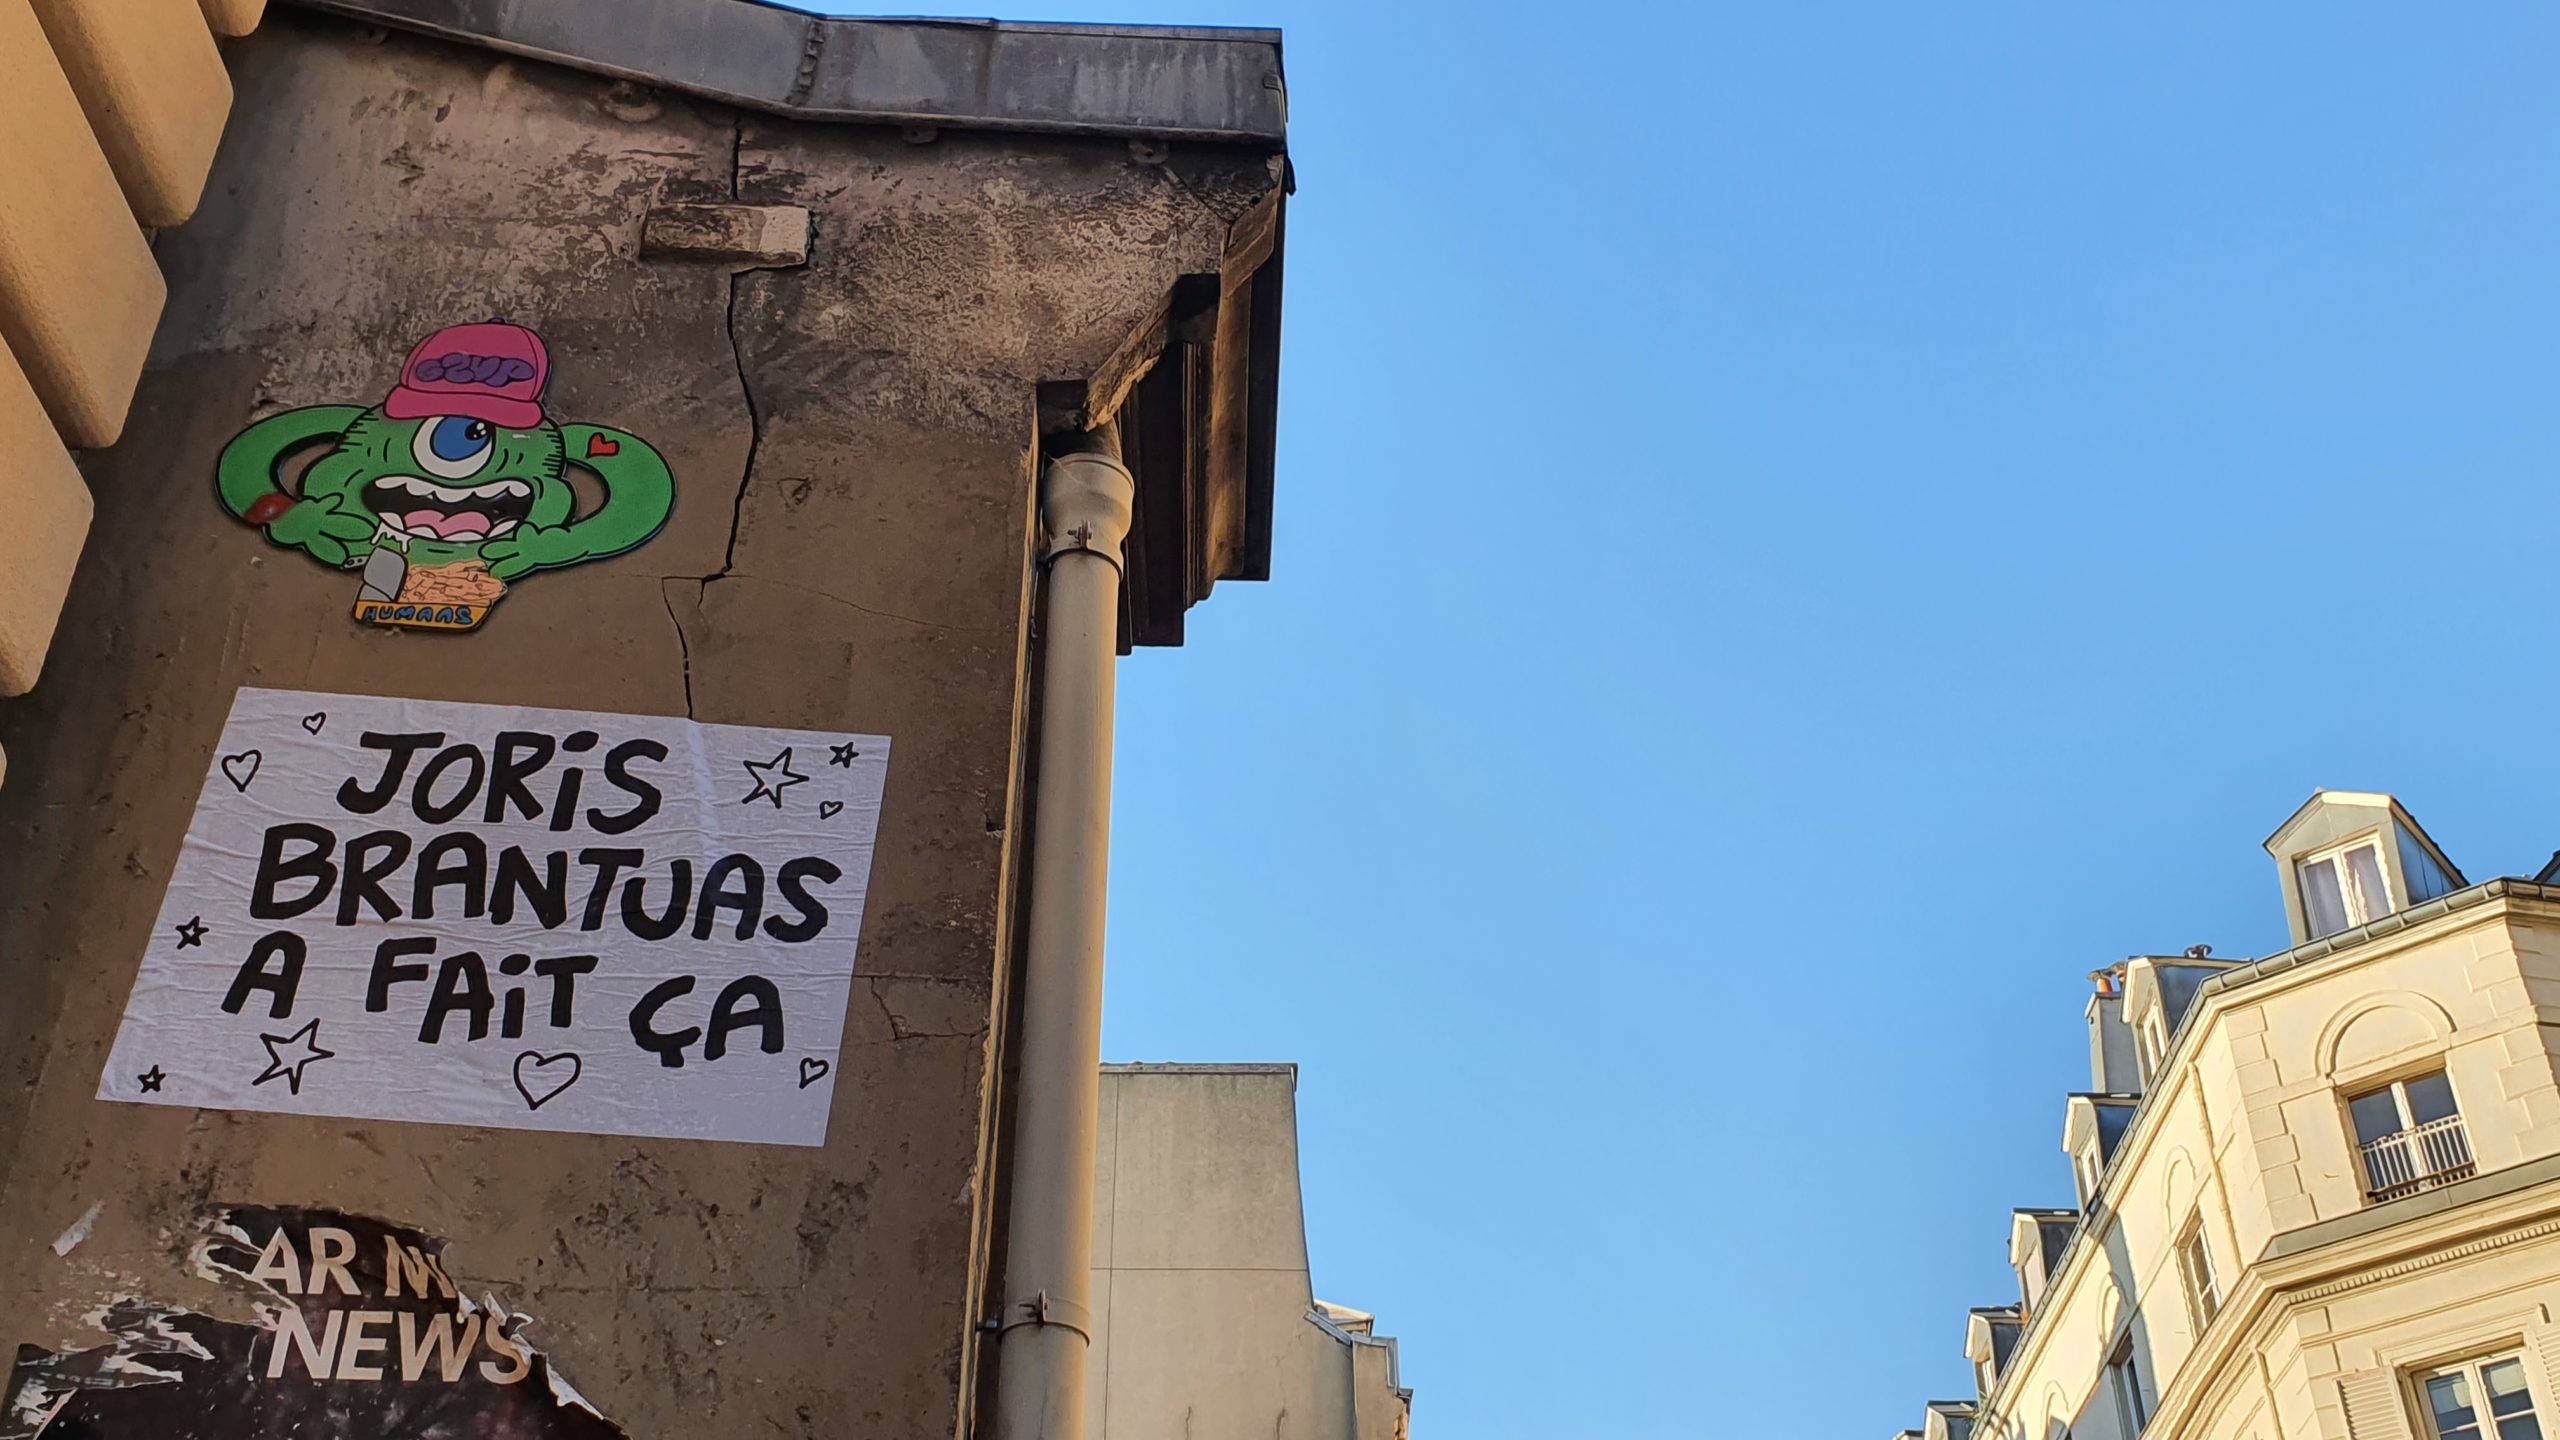 Intervention urbaine à Paris avec une affiche "Joris Brantuas à fait ça" de l'artiste Joris Brantuas